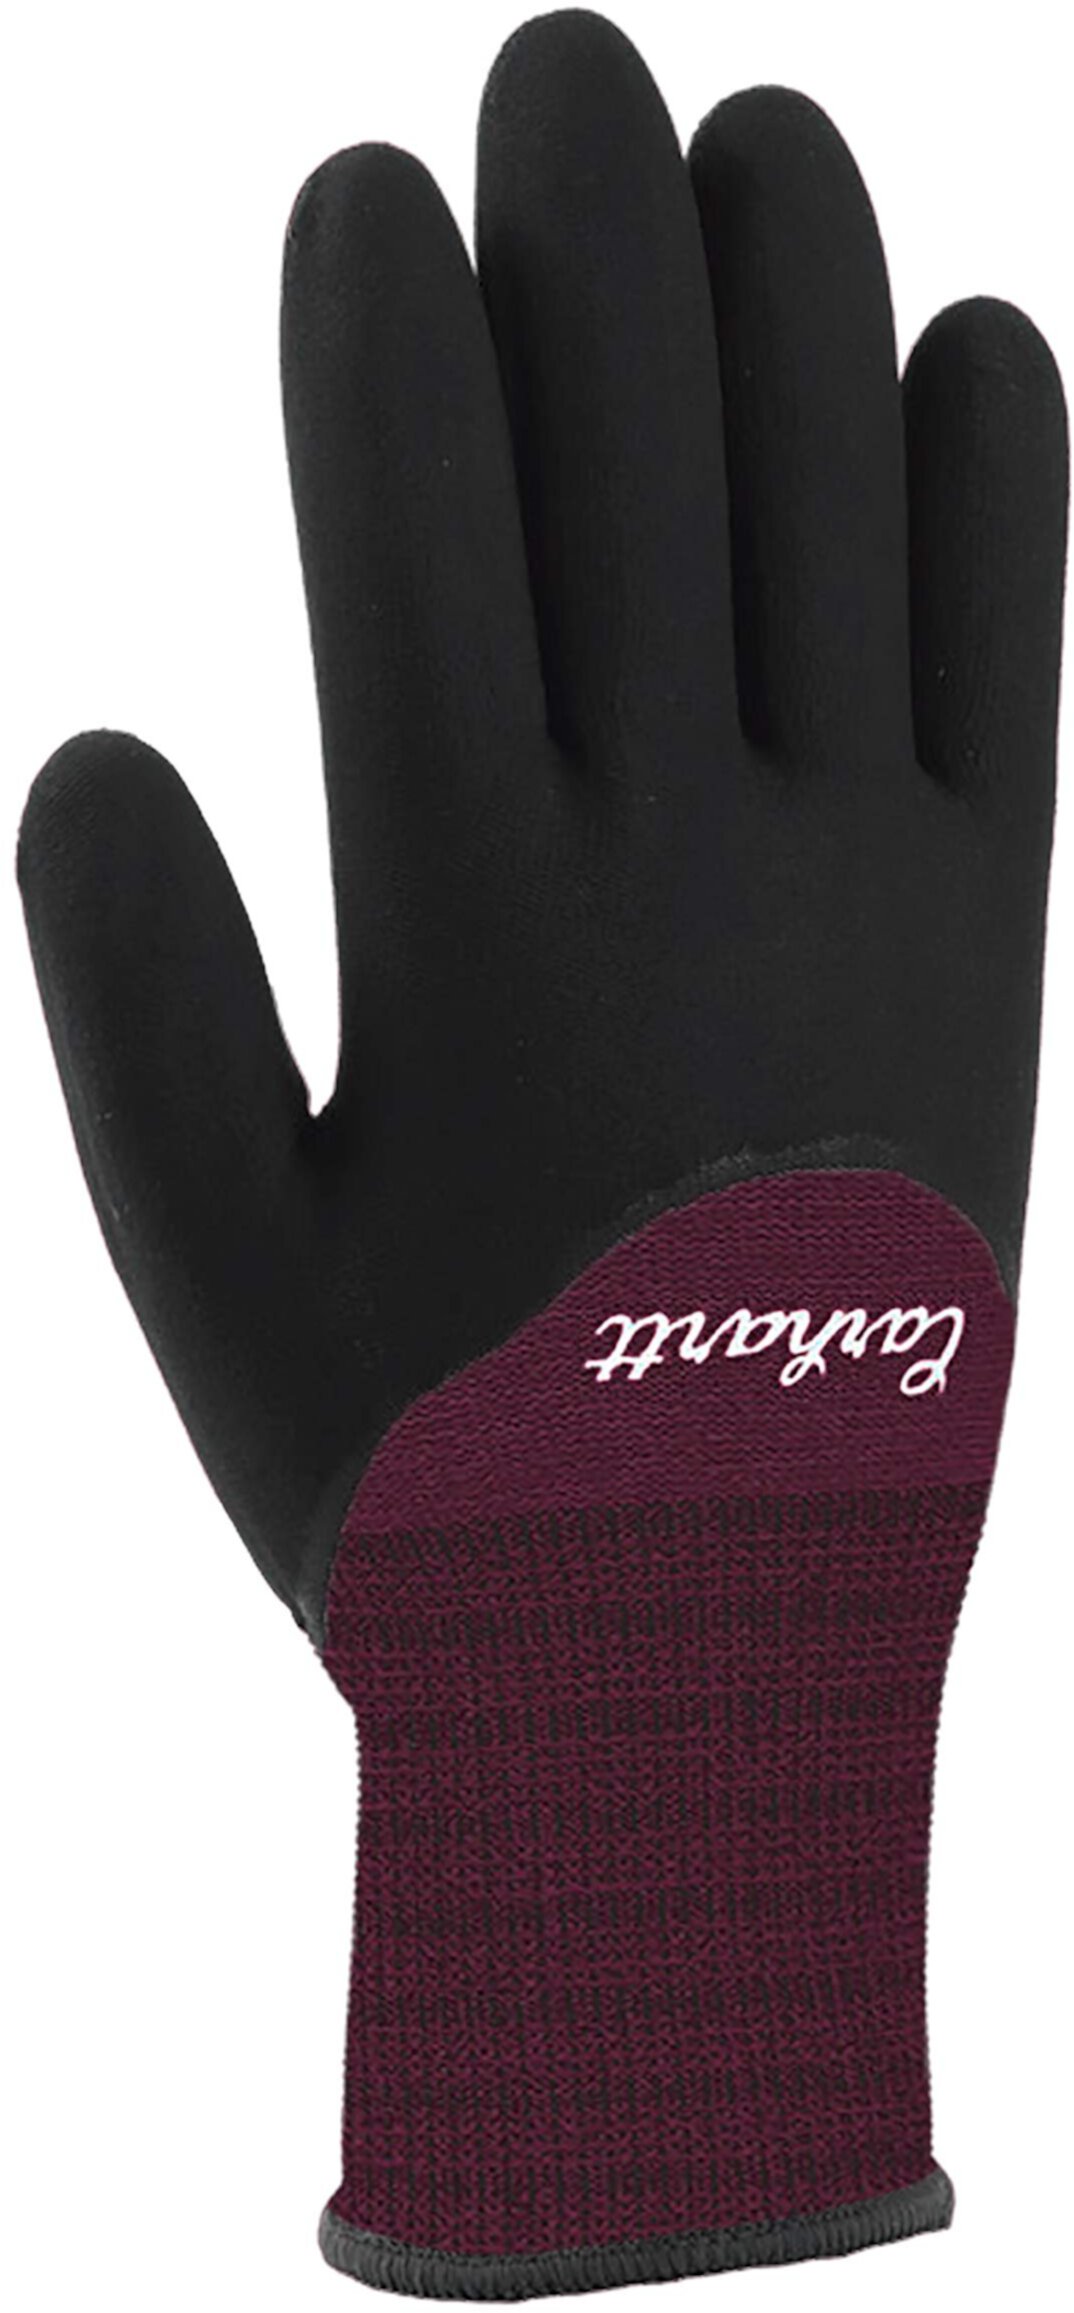 Женские нитриловые перчатки с термоподкладкой и полным покрытием Carhartt